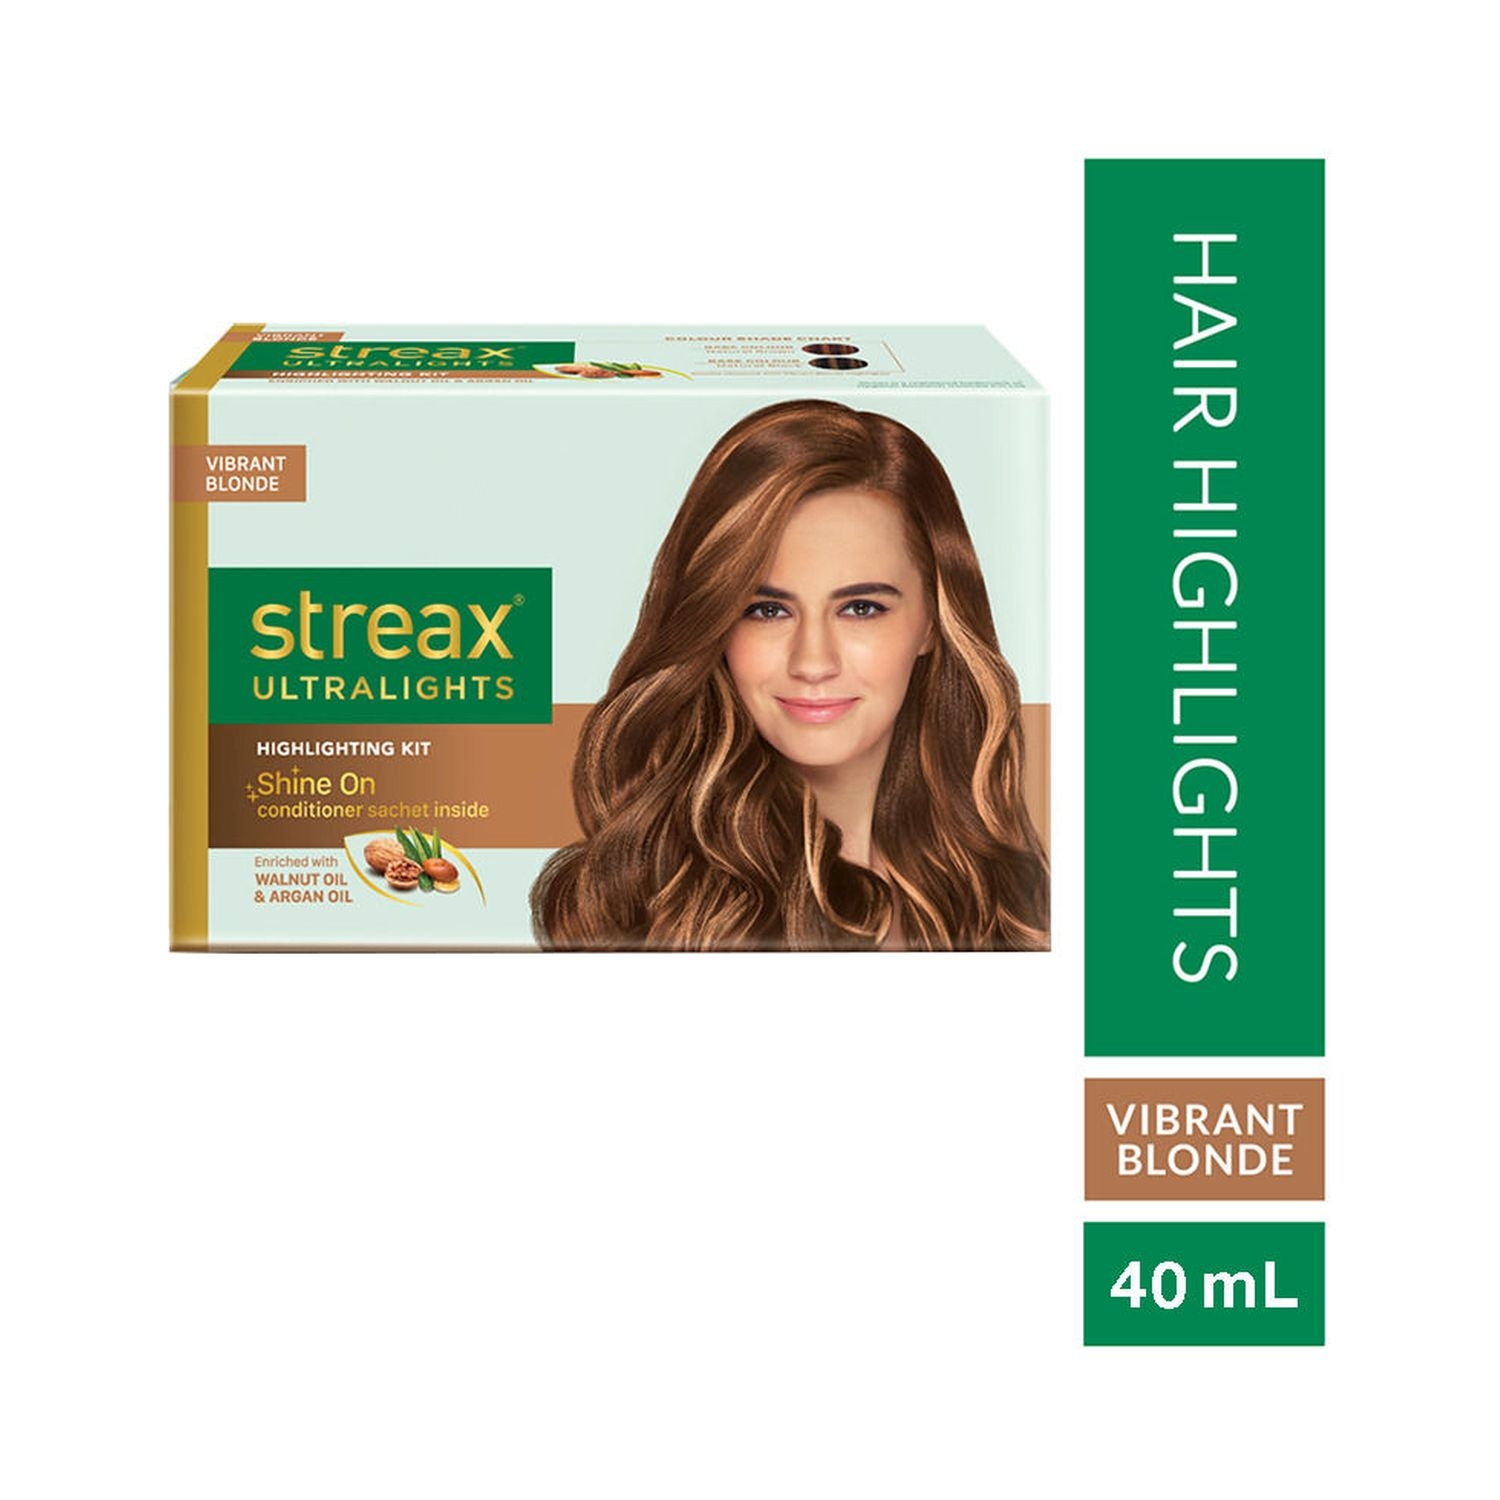 Streax Ultralights Hair Color Highlighting Kit for Women & Men 60ml (Pack  of 6) , Vibrant Blonde - Price in India, Buy Streax Ultralights Hair Color  Highlighting Kit for Women & Men